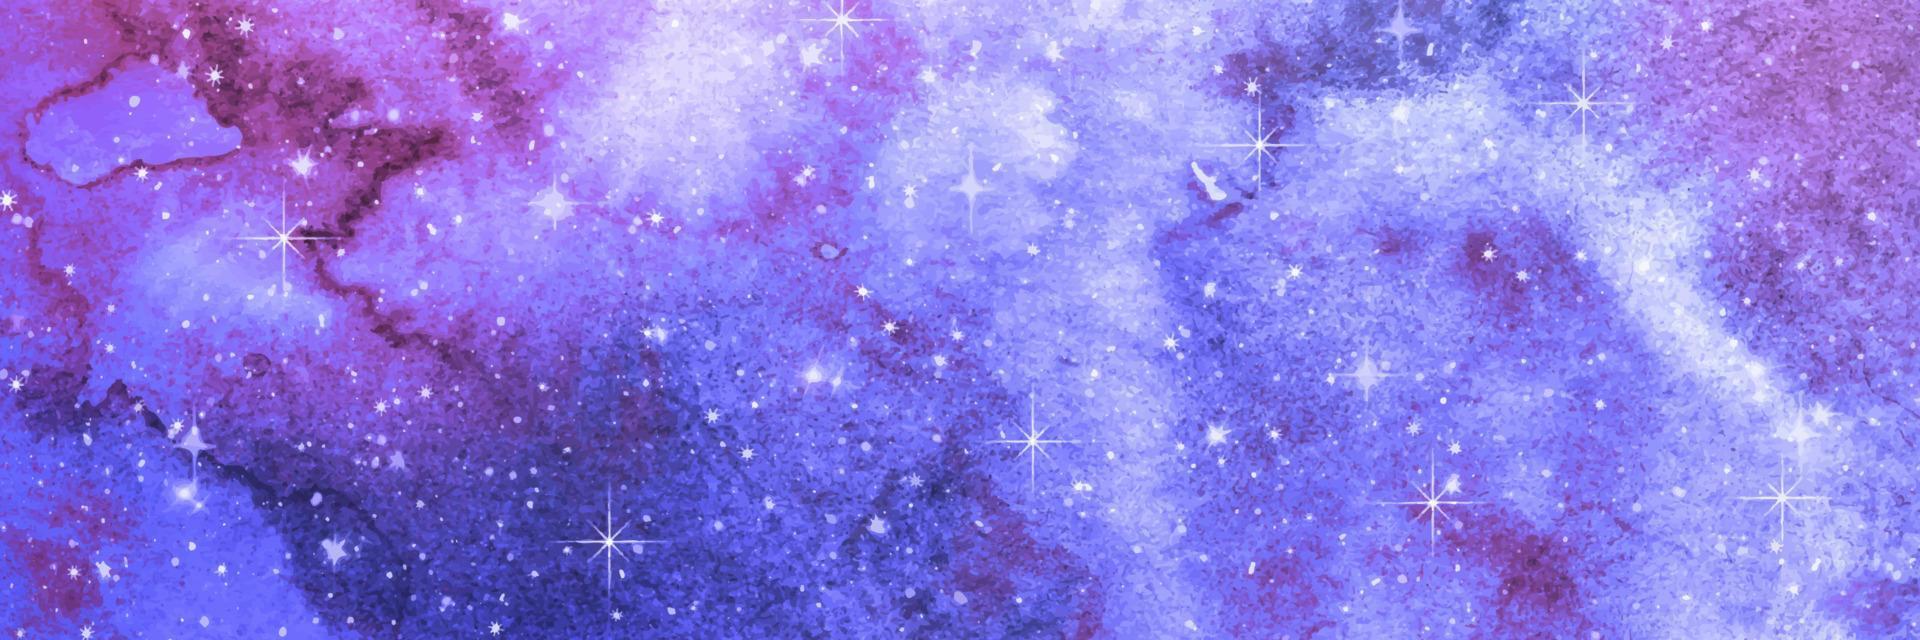 trama galassia acquerello blu. fondo di vettore del cielo stellato di notte. illustrazione di arte astratta. universo fantastico. nuvole viola. schizzi di vernice